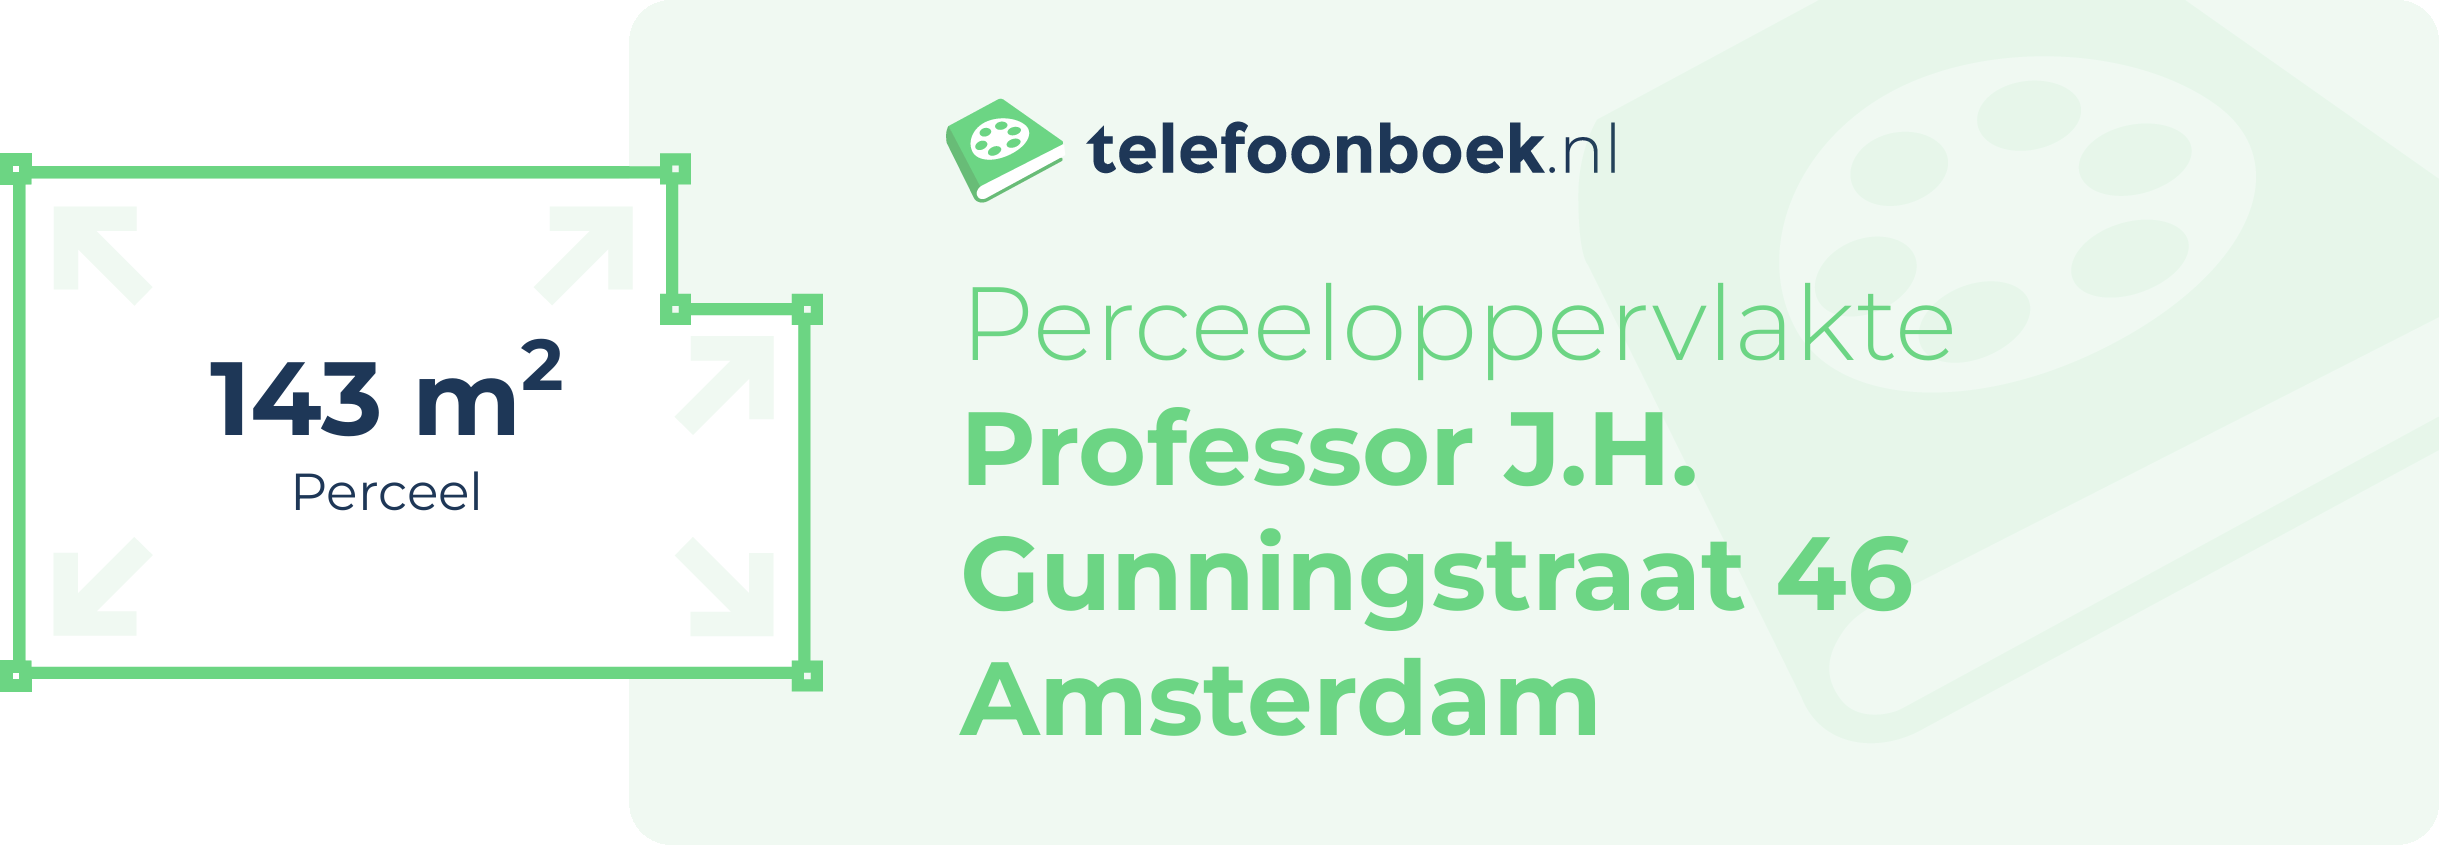 Perceeloppervlakte Professor J.H. Gunningstraat 46 Amsterdam